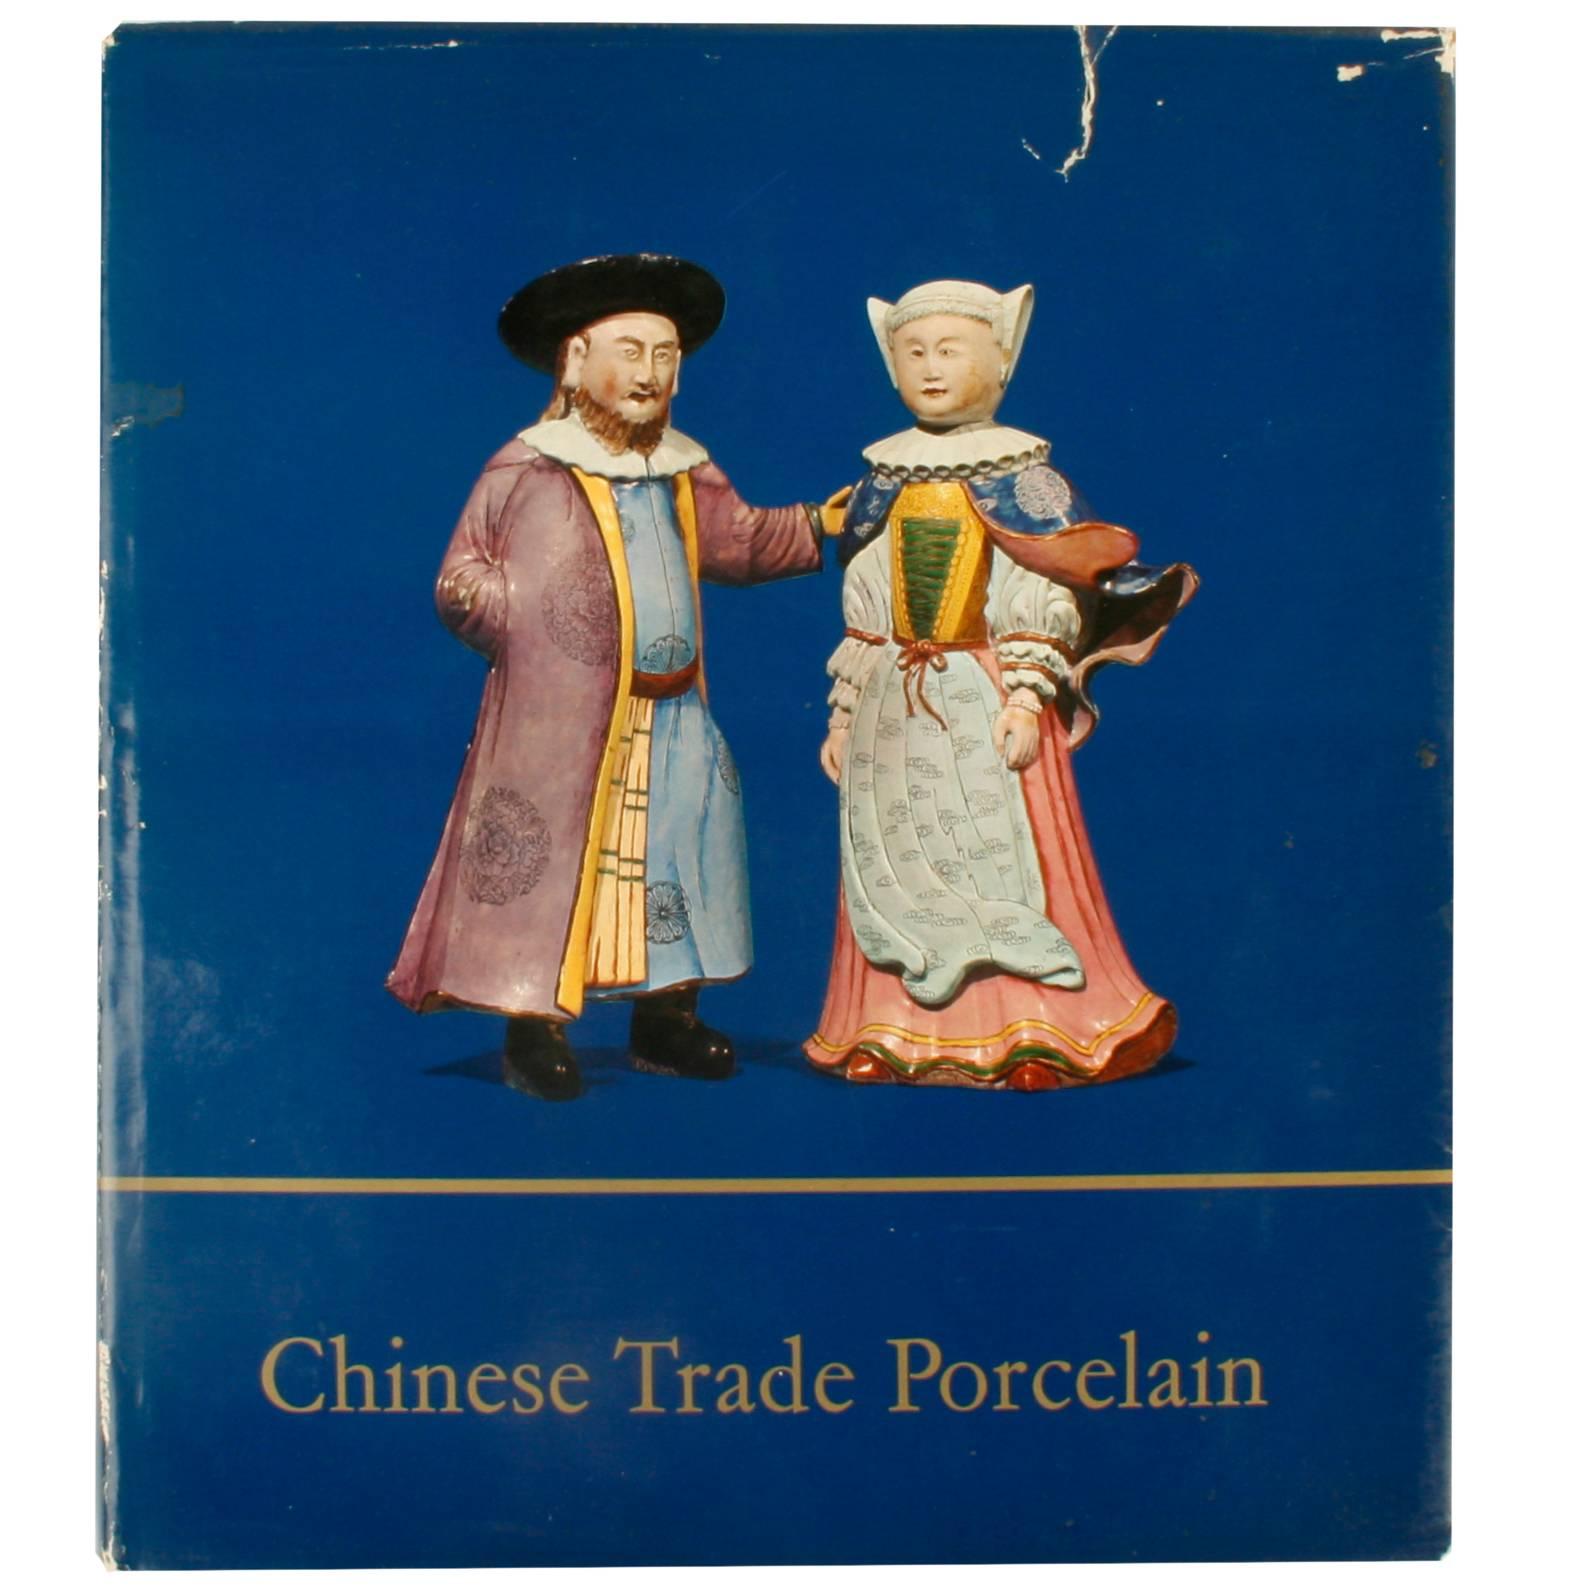 Chinesisches Porzellan des chinesischen Handels, Erstausgabe von Michel Beurdeley